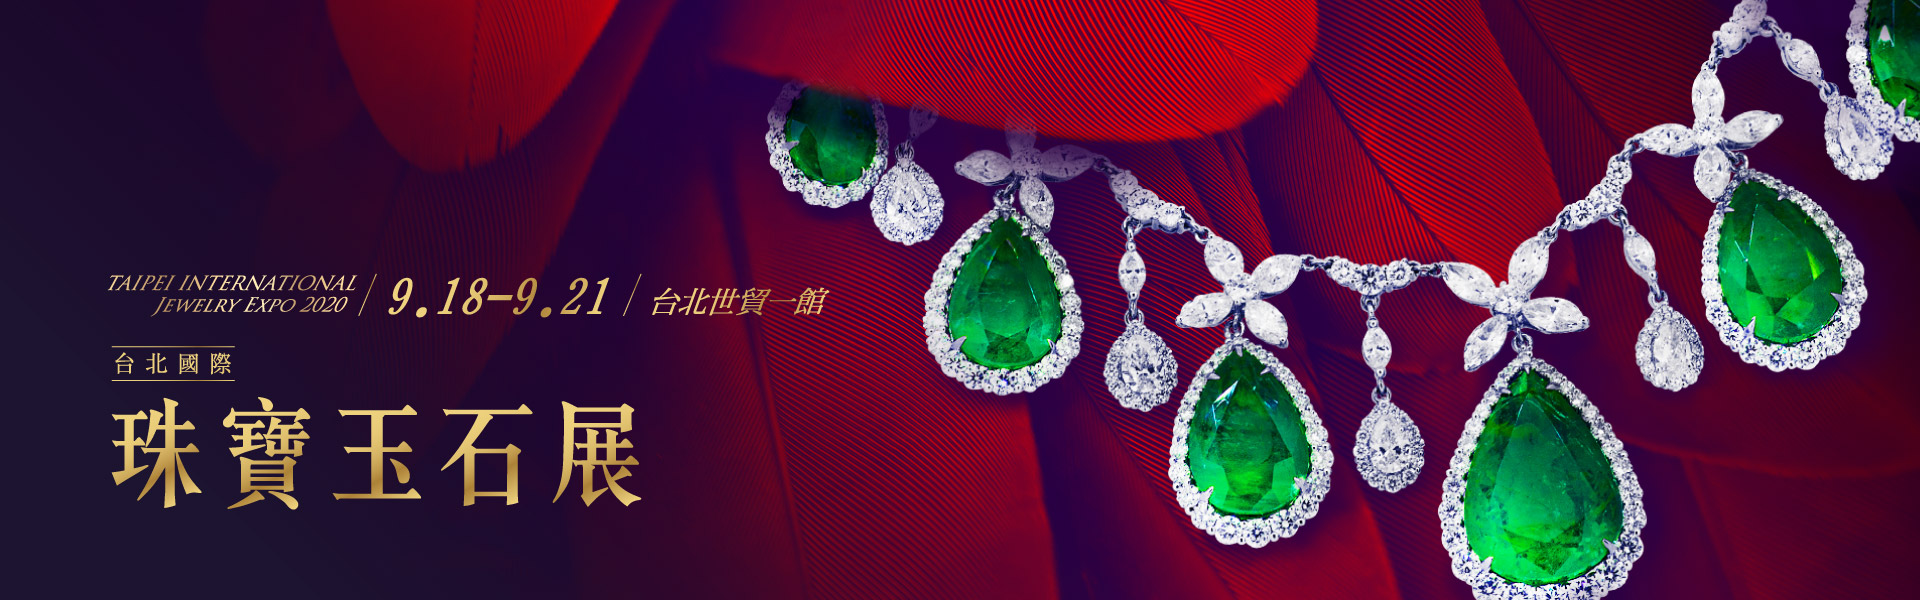 2020台北國際珠寶玉石展